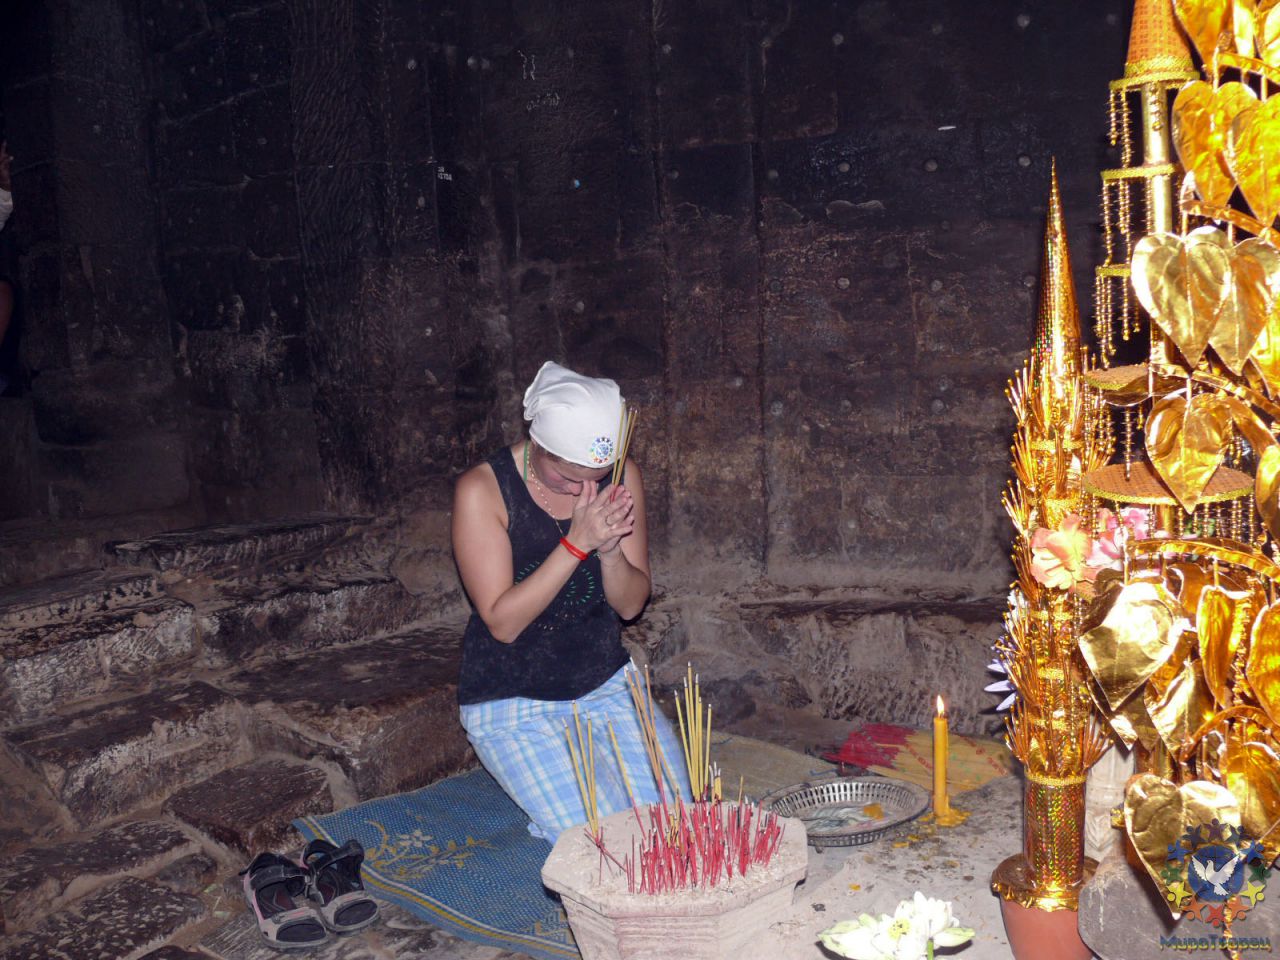 Во время действия. - Камбоджа декабрь 2010г.